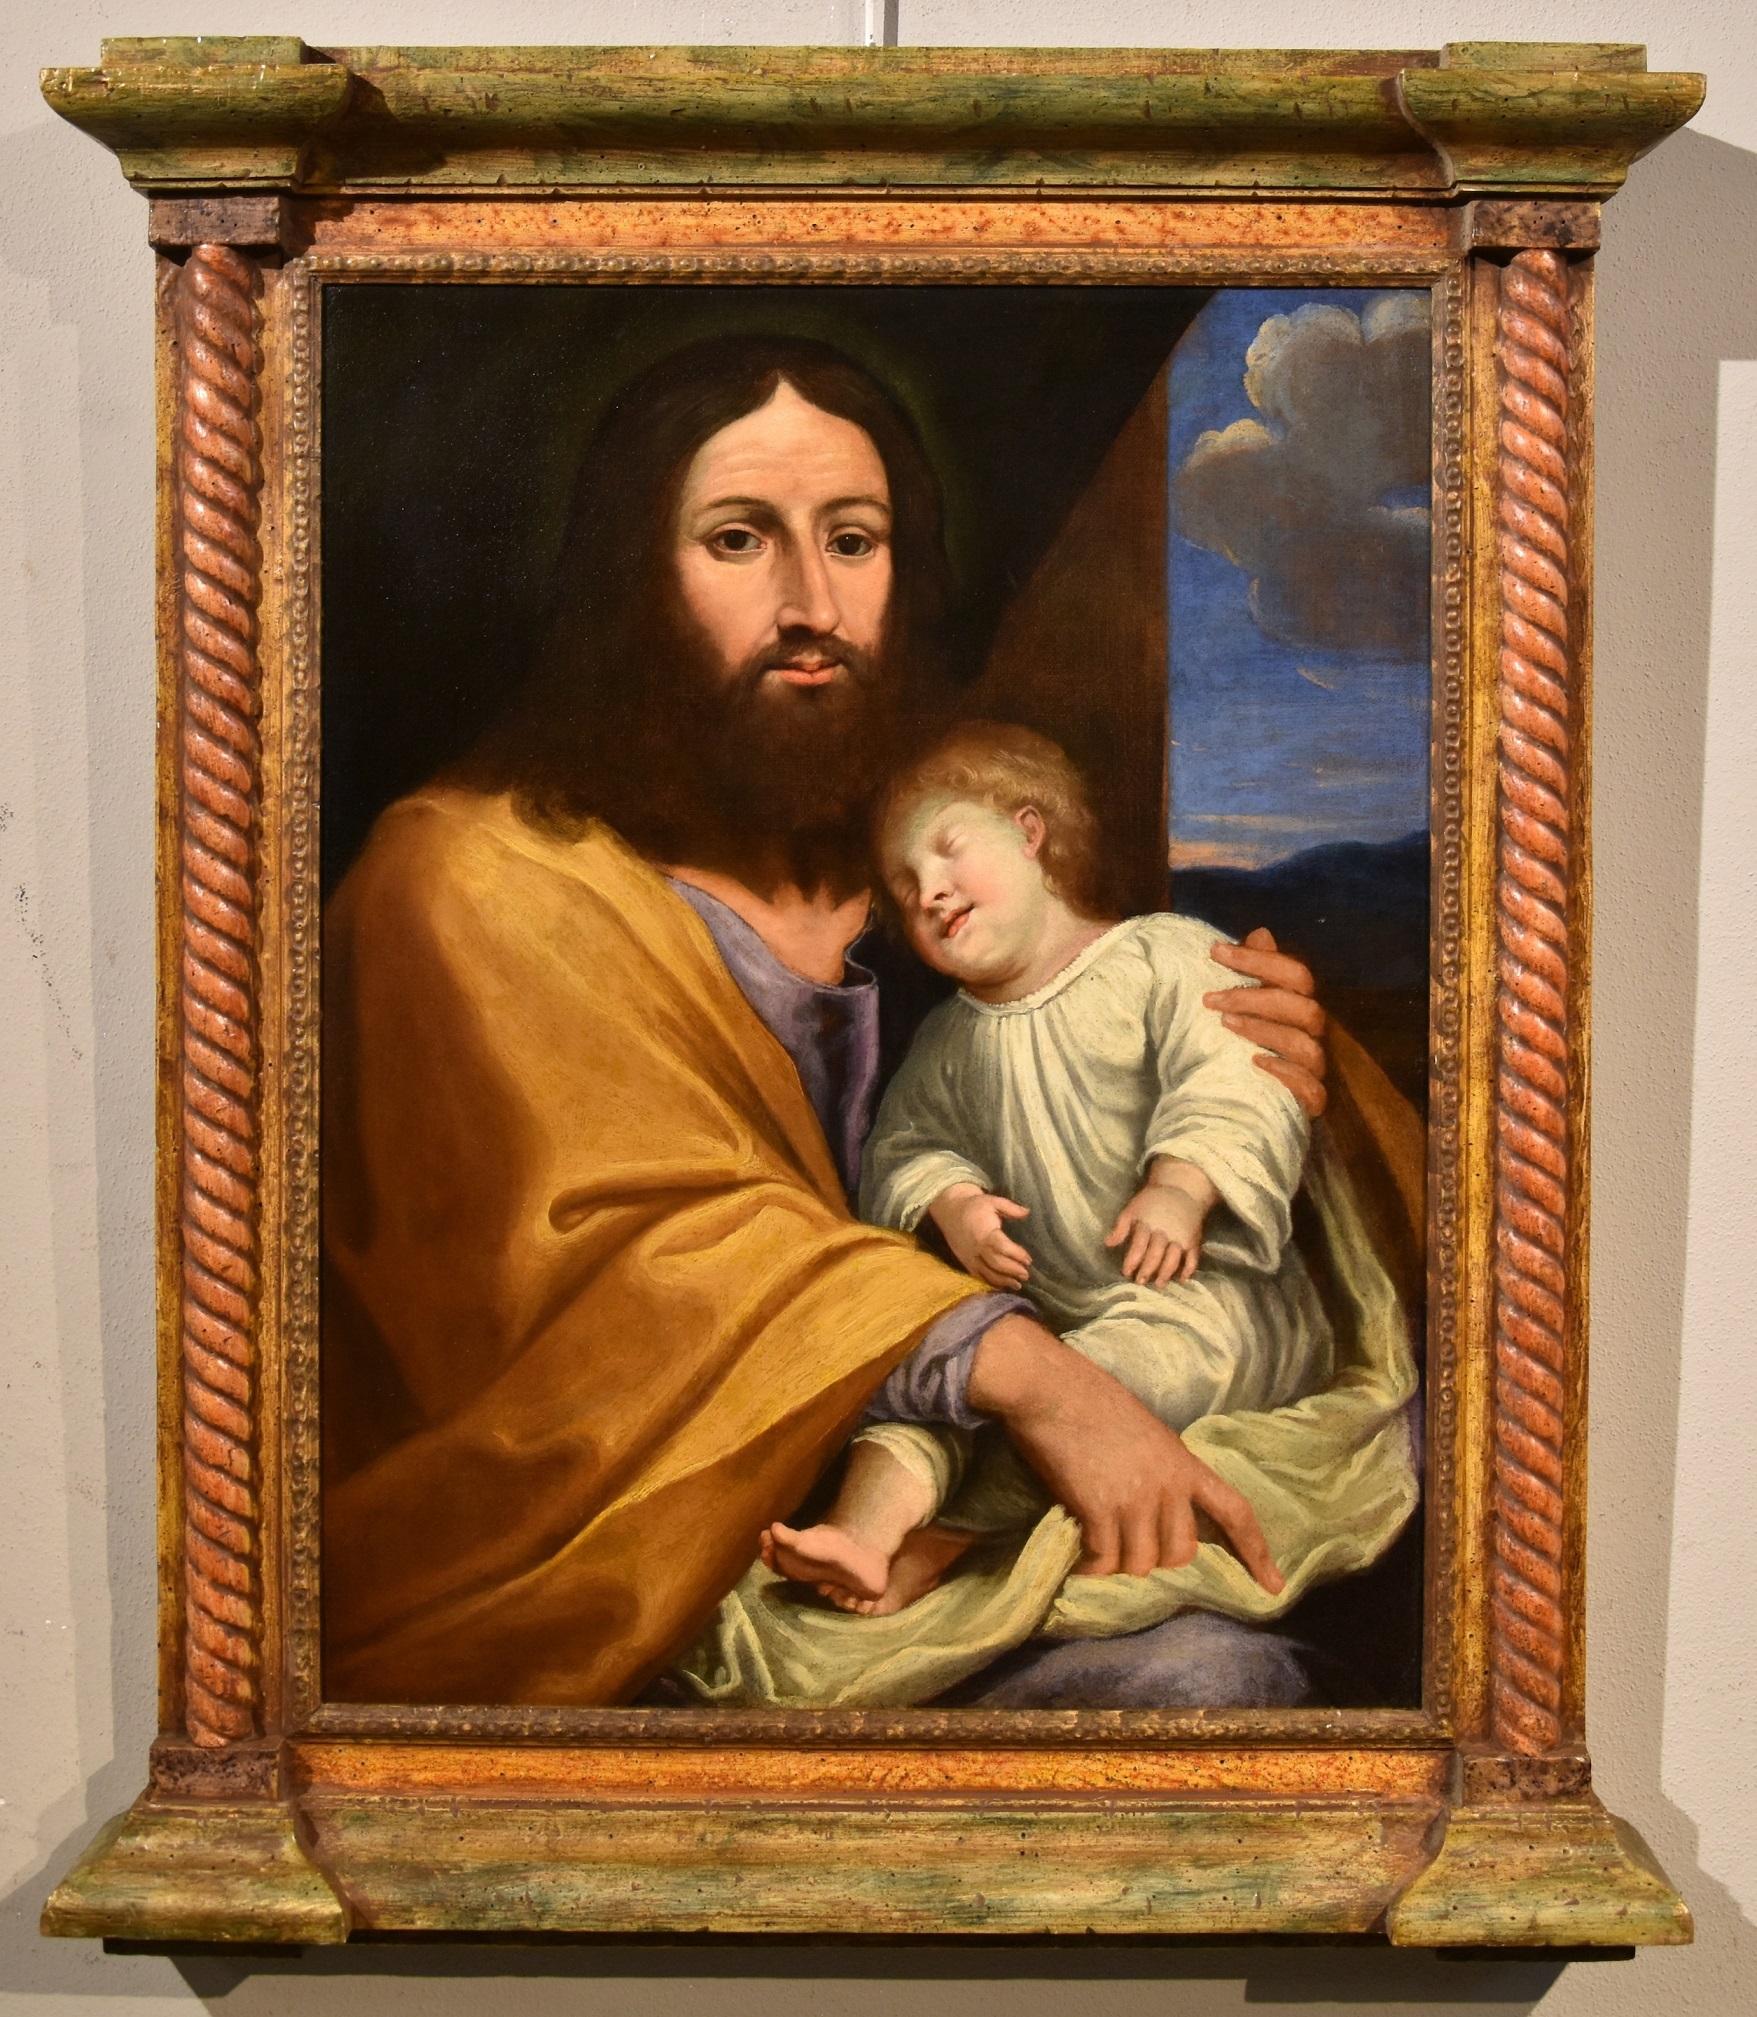 Giovan Battista Salvi known as "the Sassoferrato" (1609 - 1685) Portrait Painting - Jesus Son Salvi Paint Oil on canvas Old master 17th Century Italian Religious